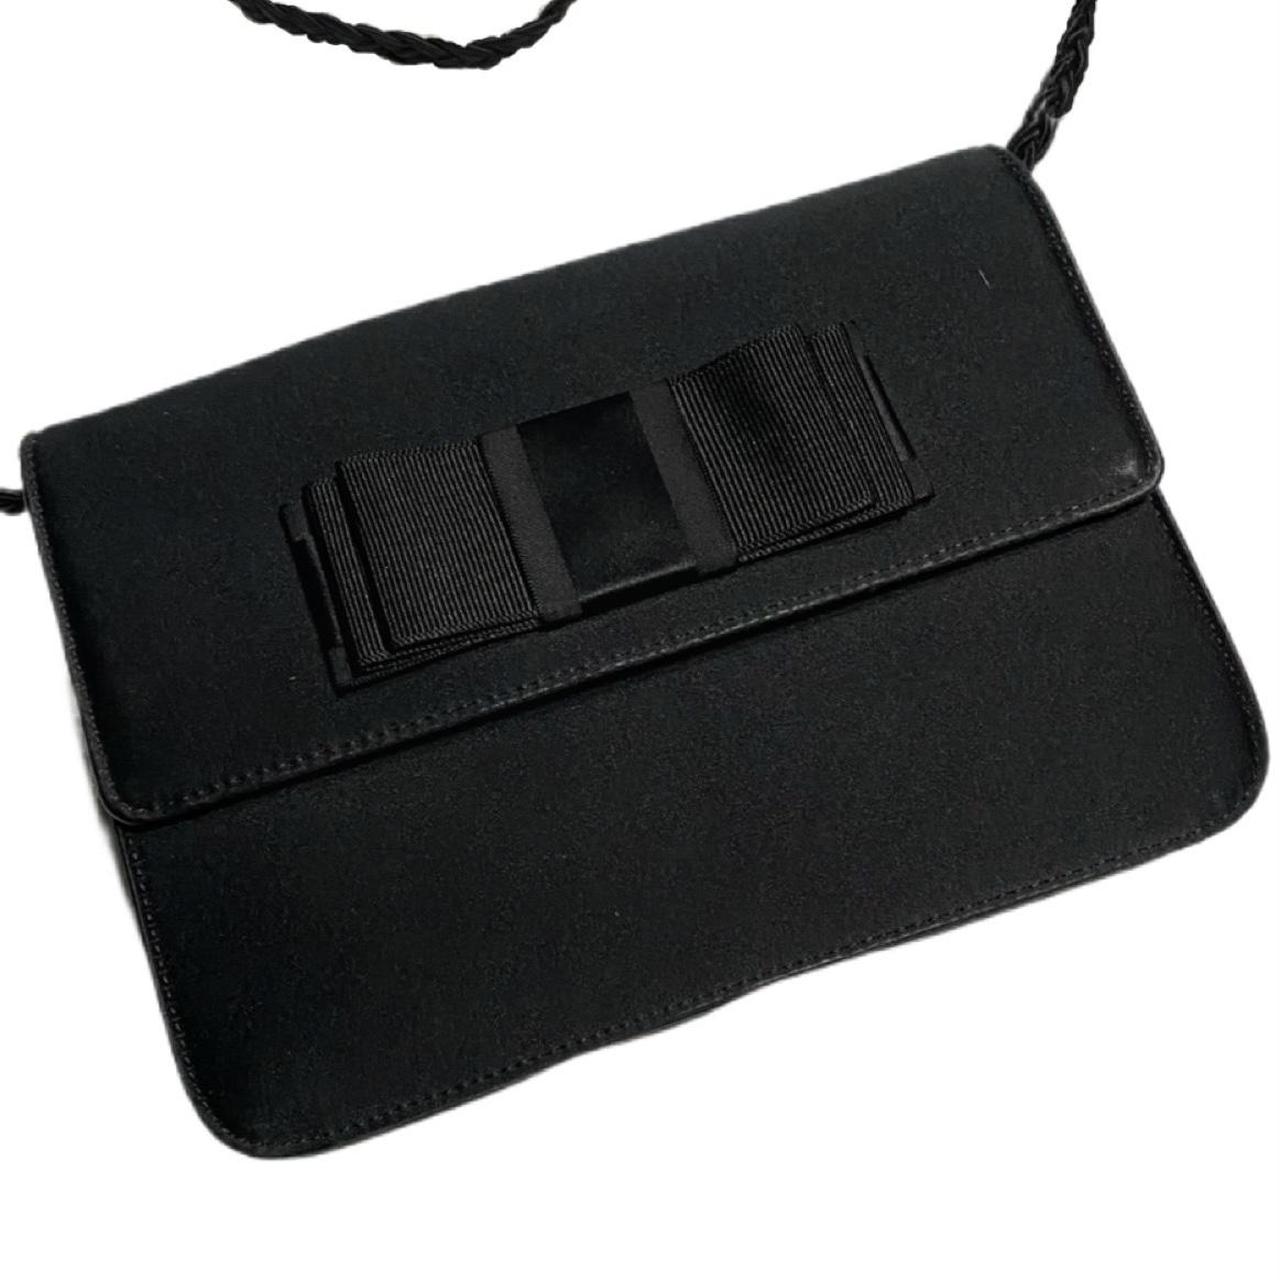 Givenchy | Bags | Rare Givenchy Bag Tote Purse Givenchy Parfums Black |  Poshmark